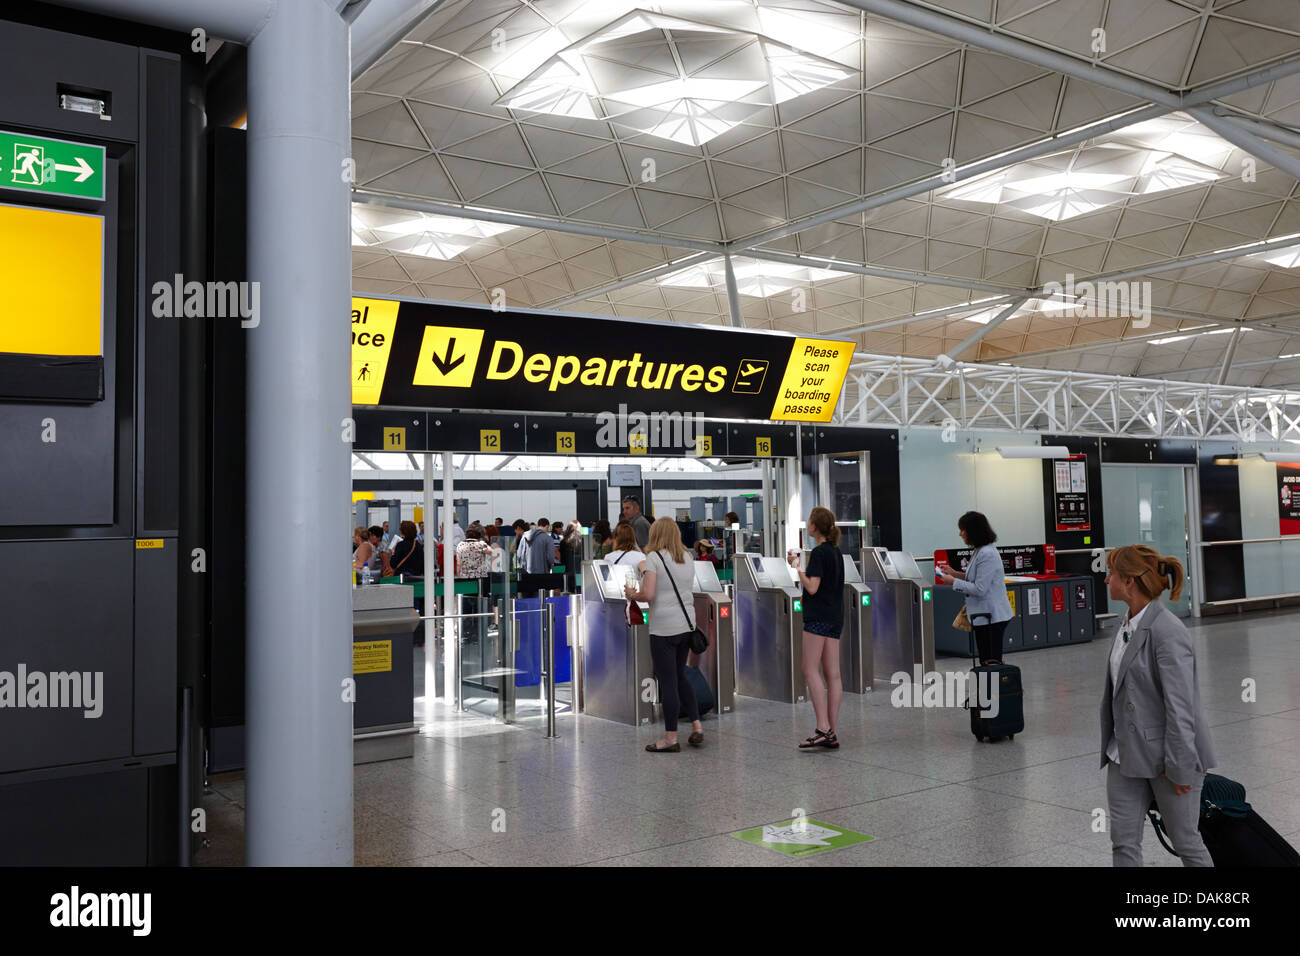 Zone des départs de l'aéroport de Londres Stansted Essex, Angleterre Royaume-Uni Banque D'Images